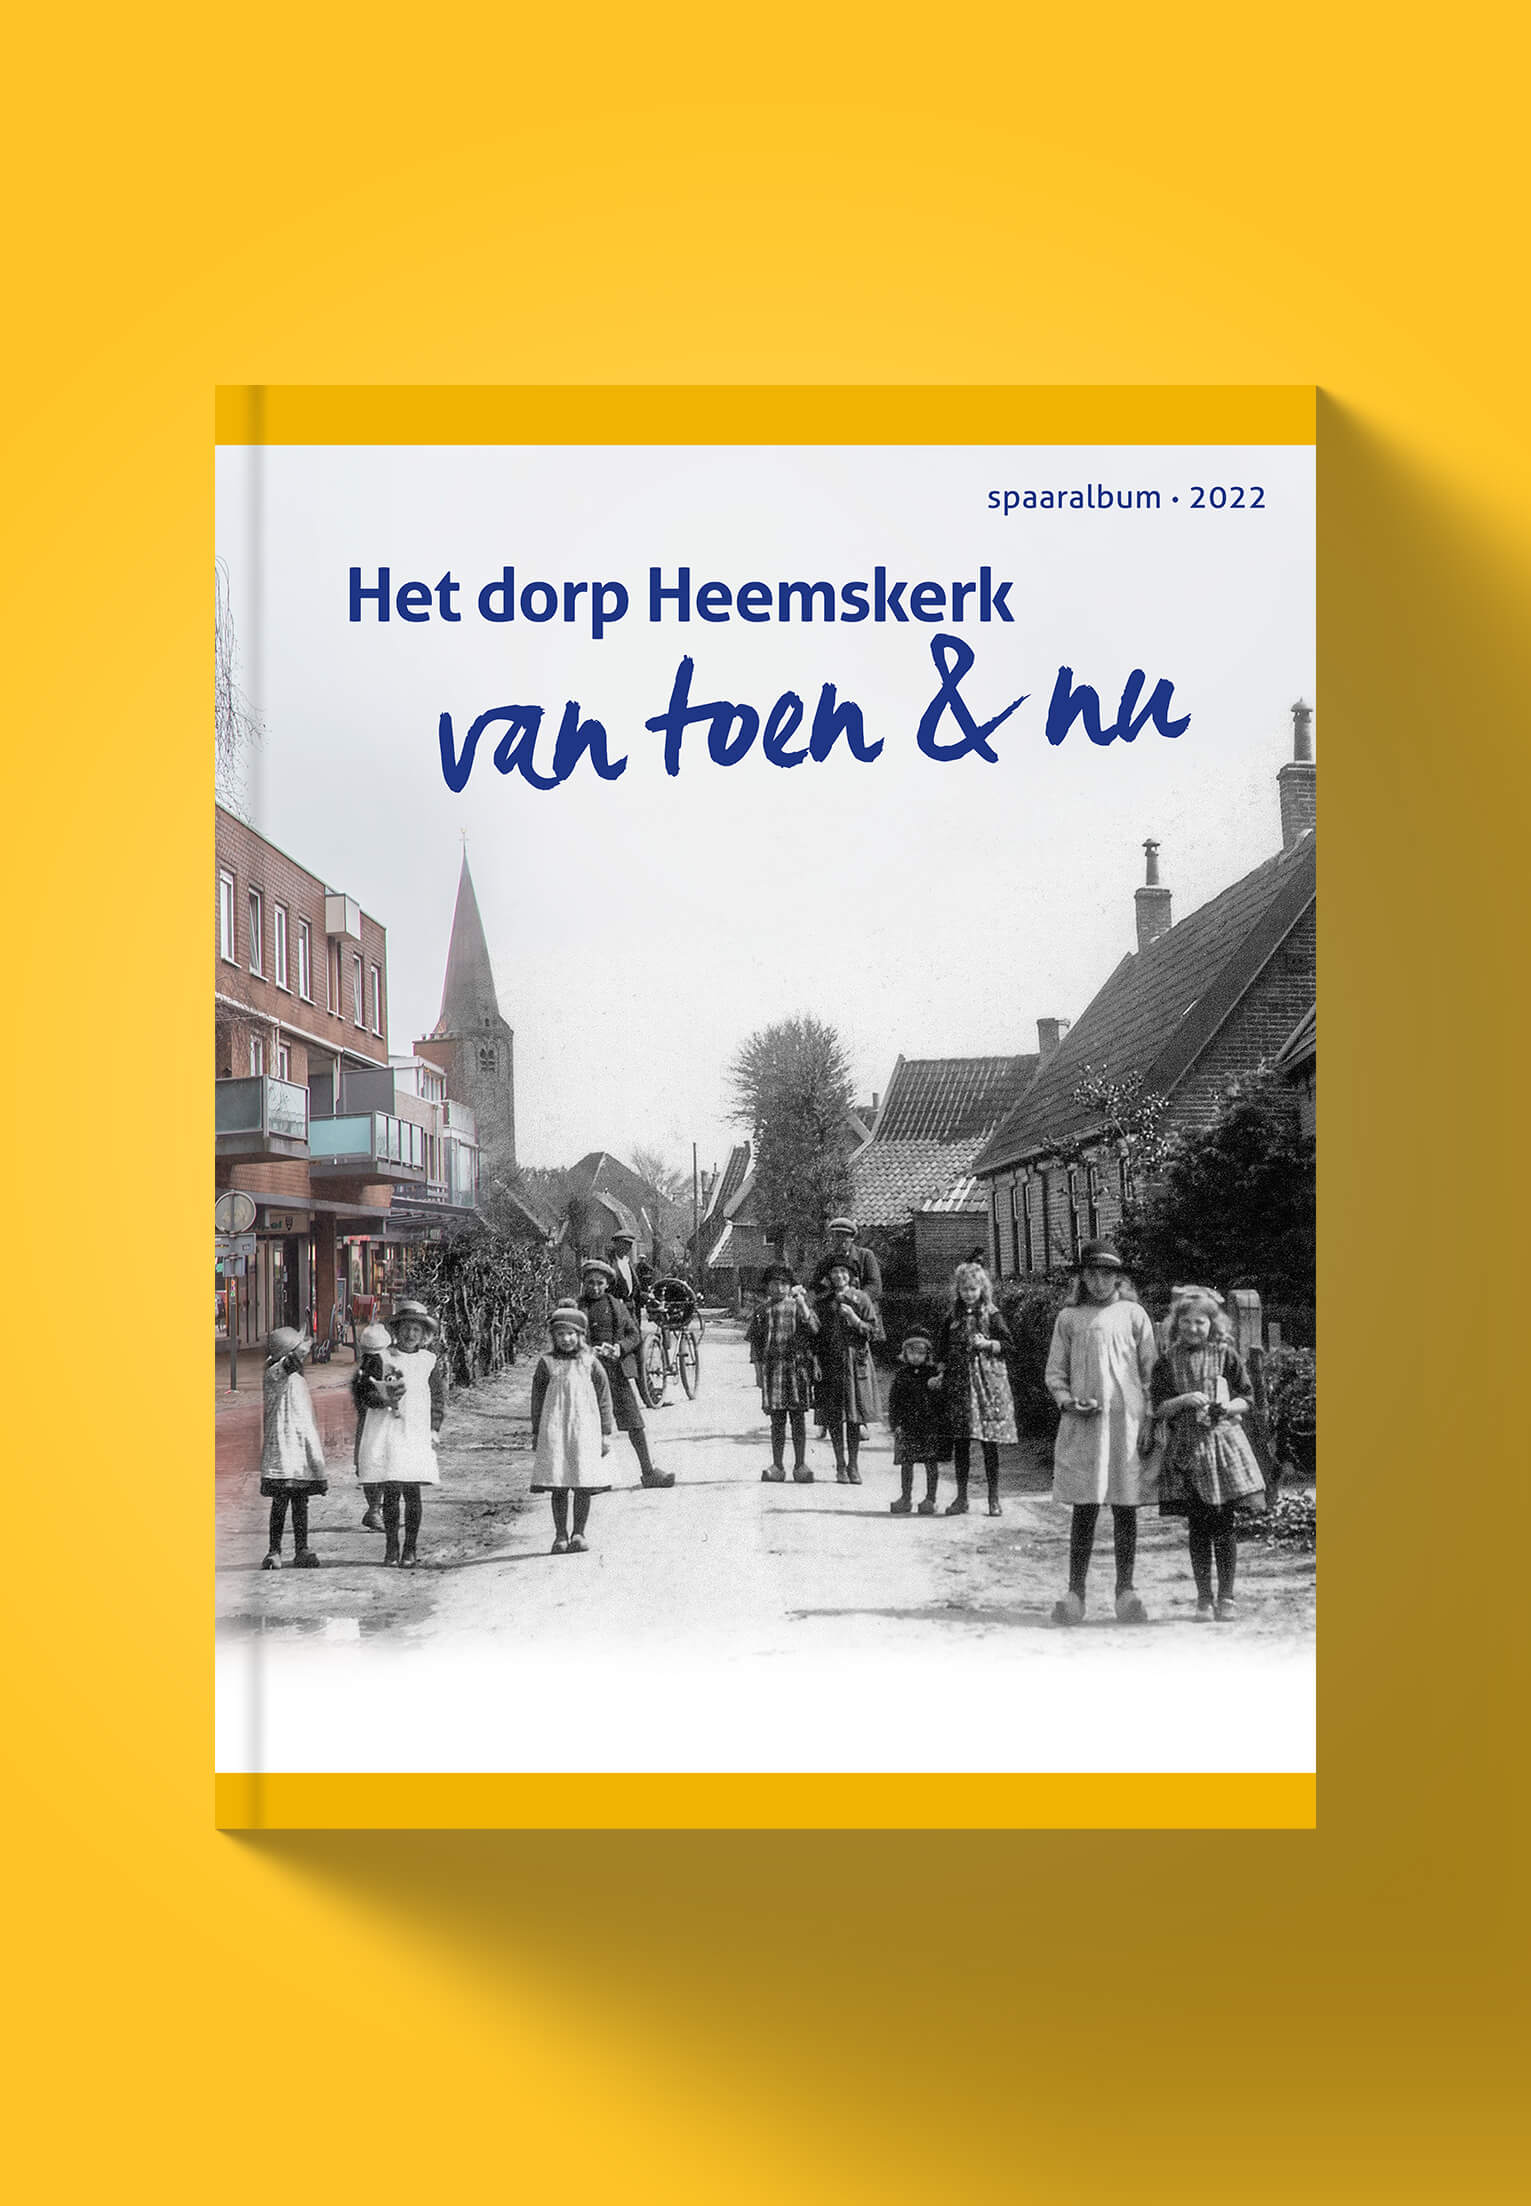 Het dorp Heemskerk van toen en nu - Jumbo Supermarkt